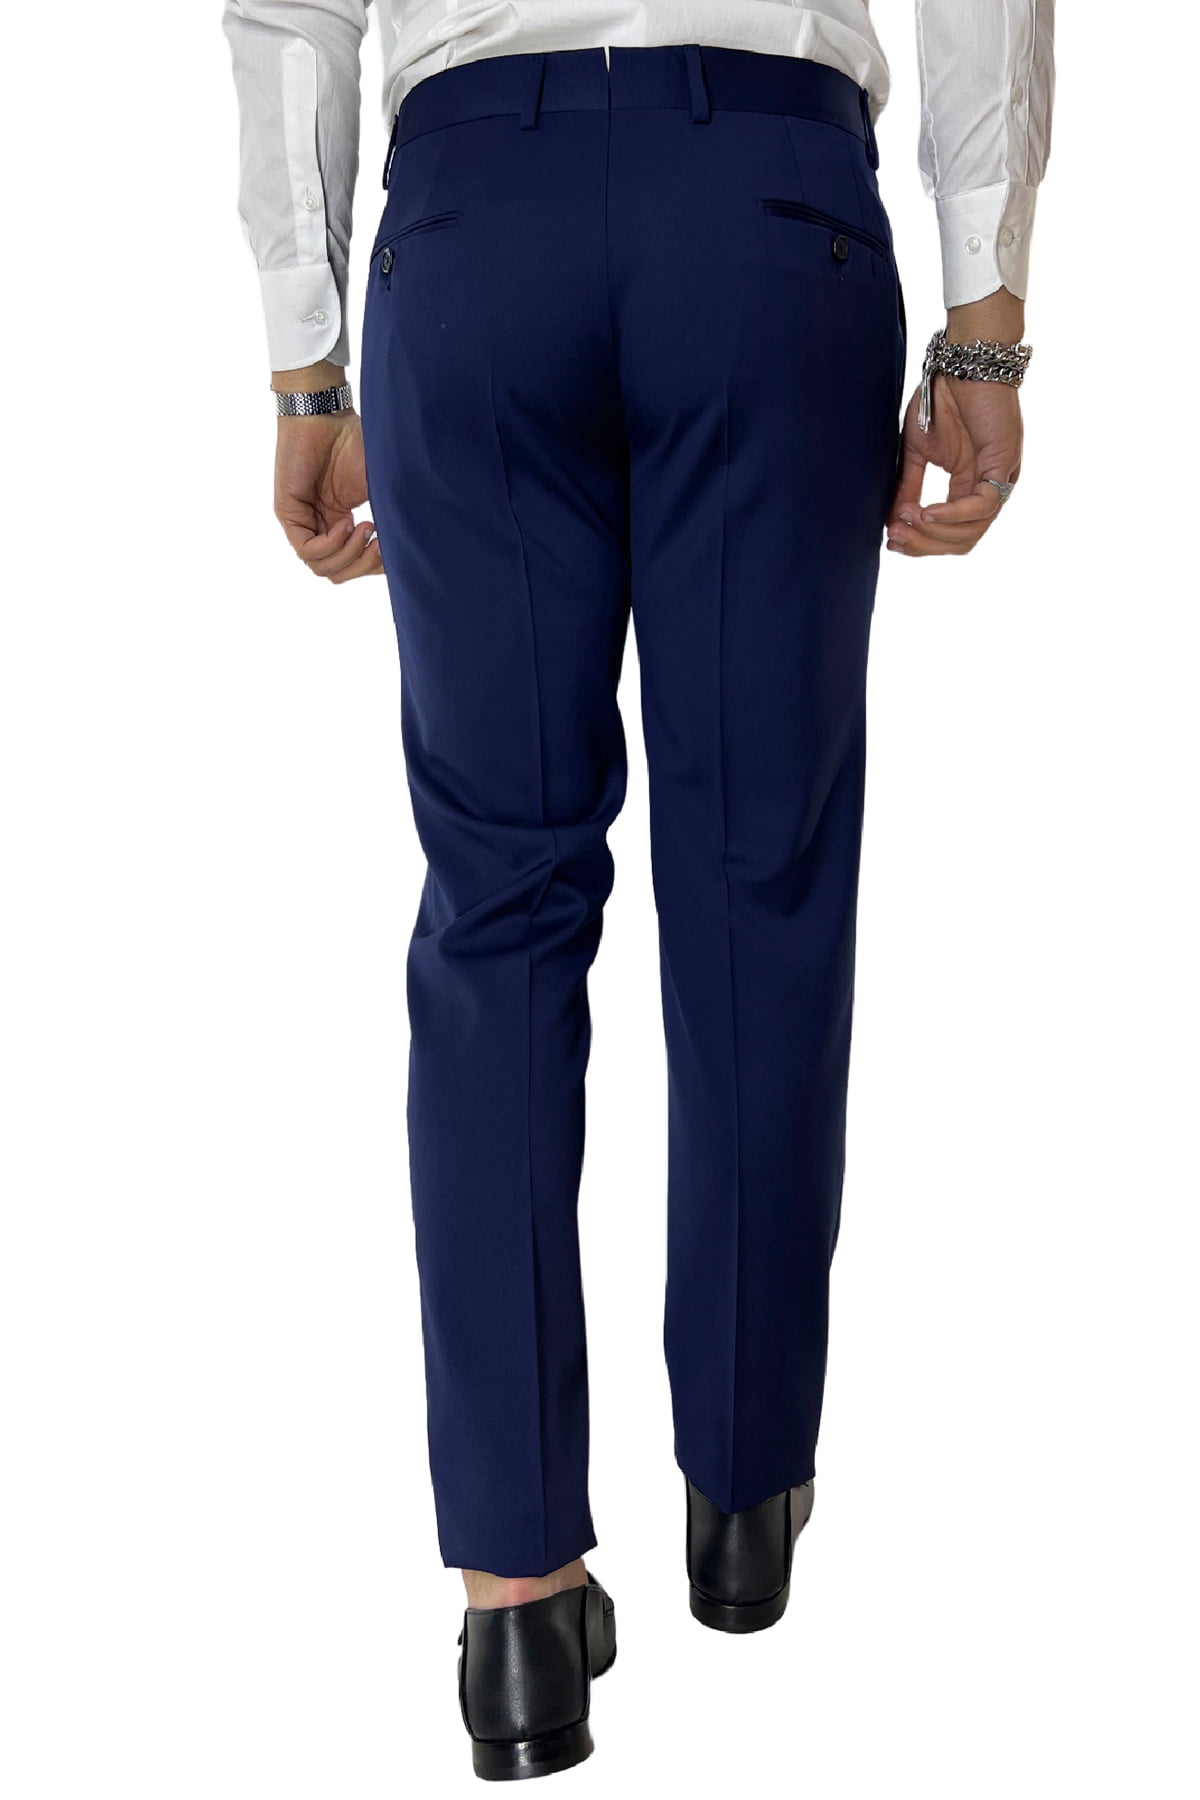 Pantalone uomo royal blu tasca america in fresco lana 100% Vitale Barberis Canonico